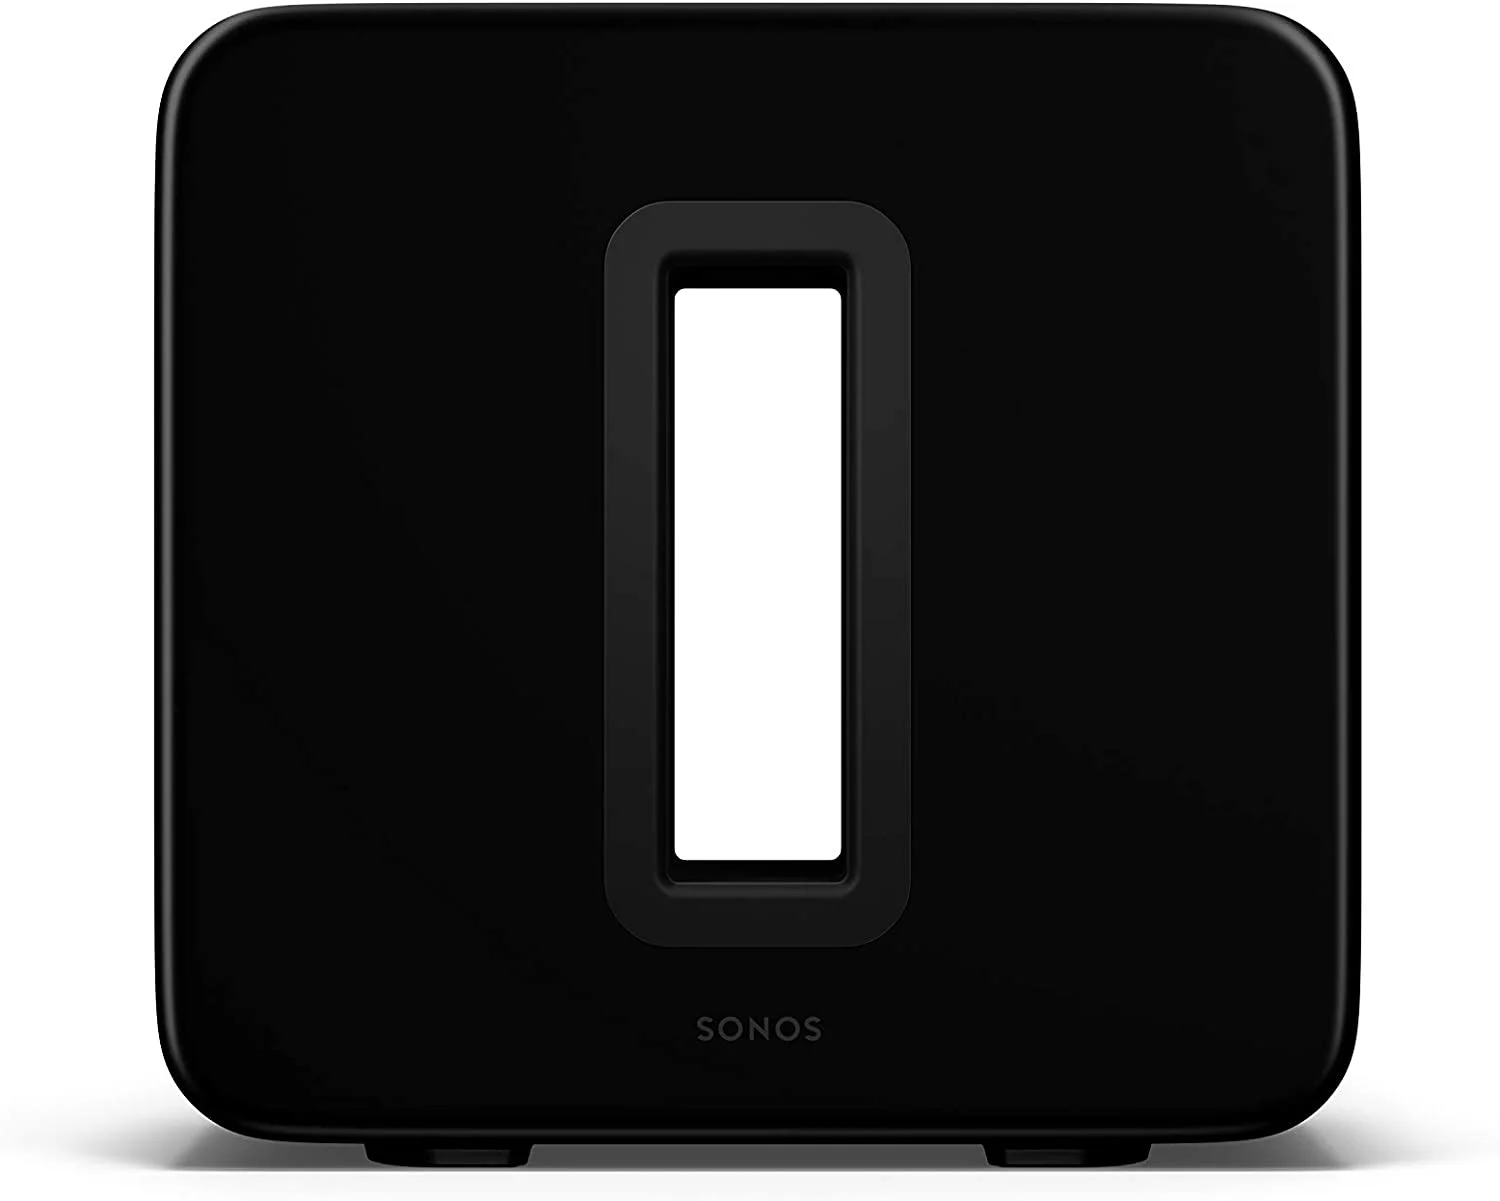 The Sonos Gen 3 wireless subwoofer in black 